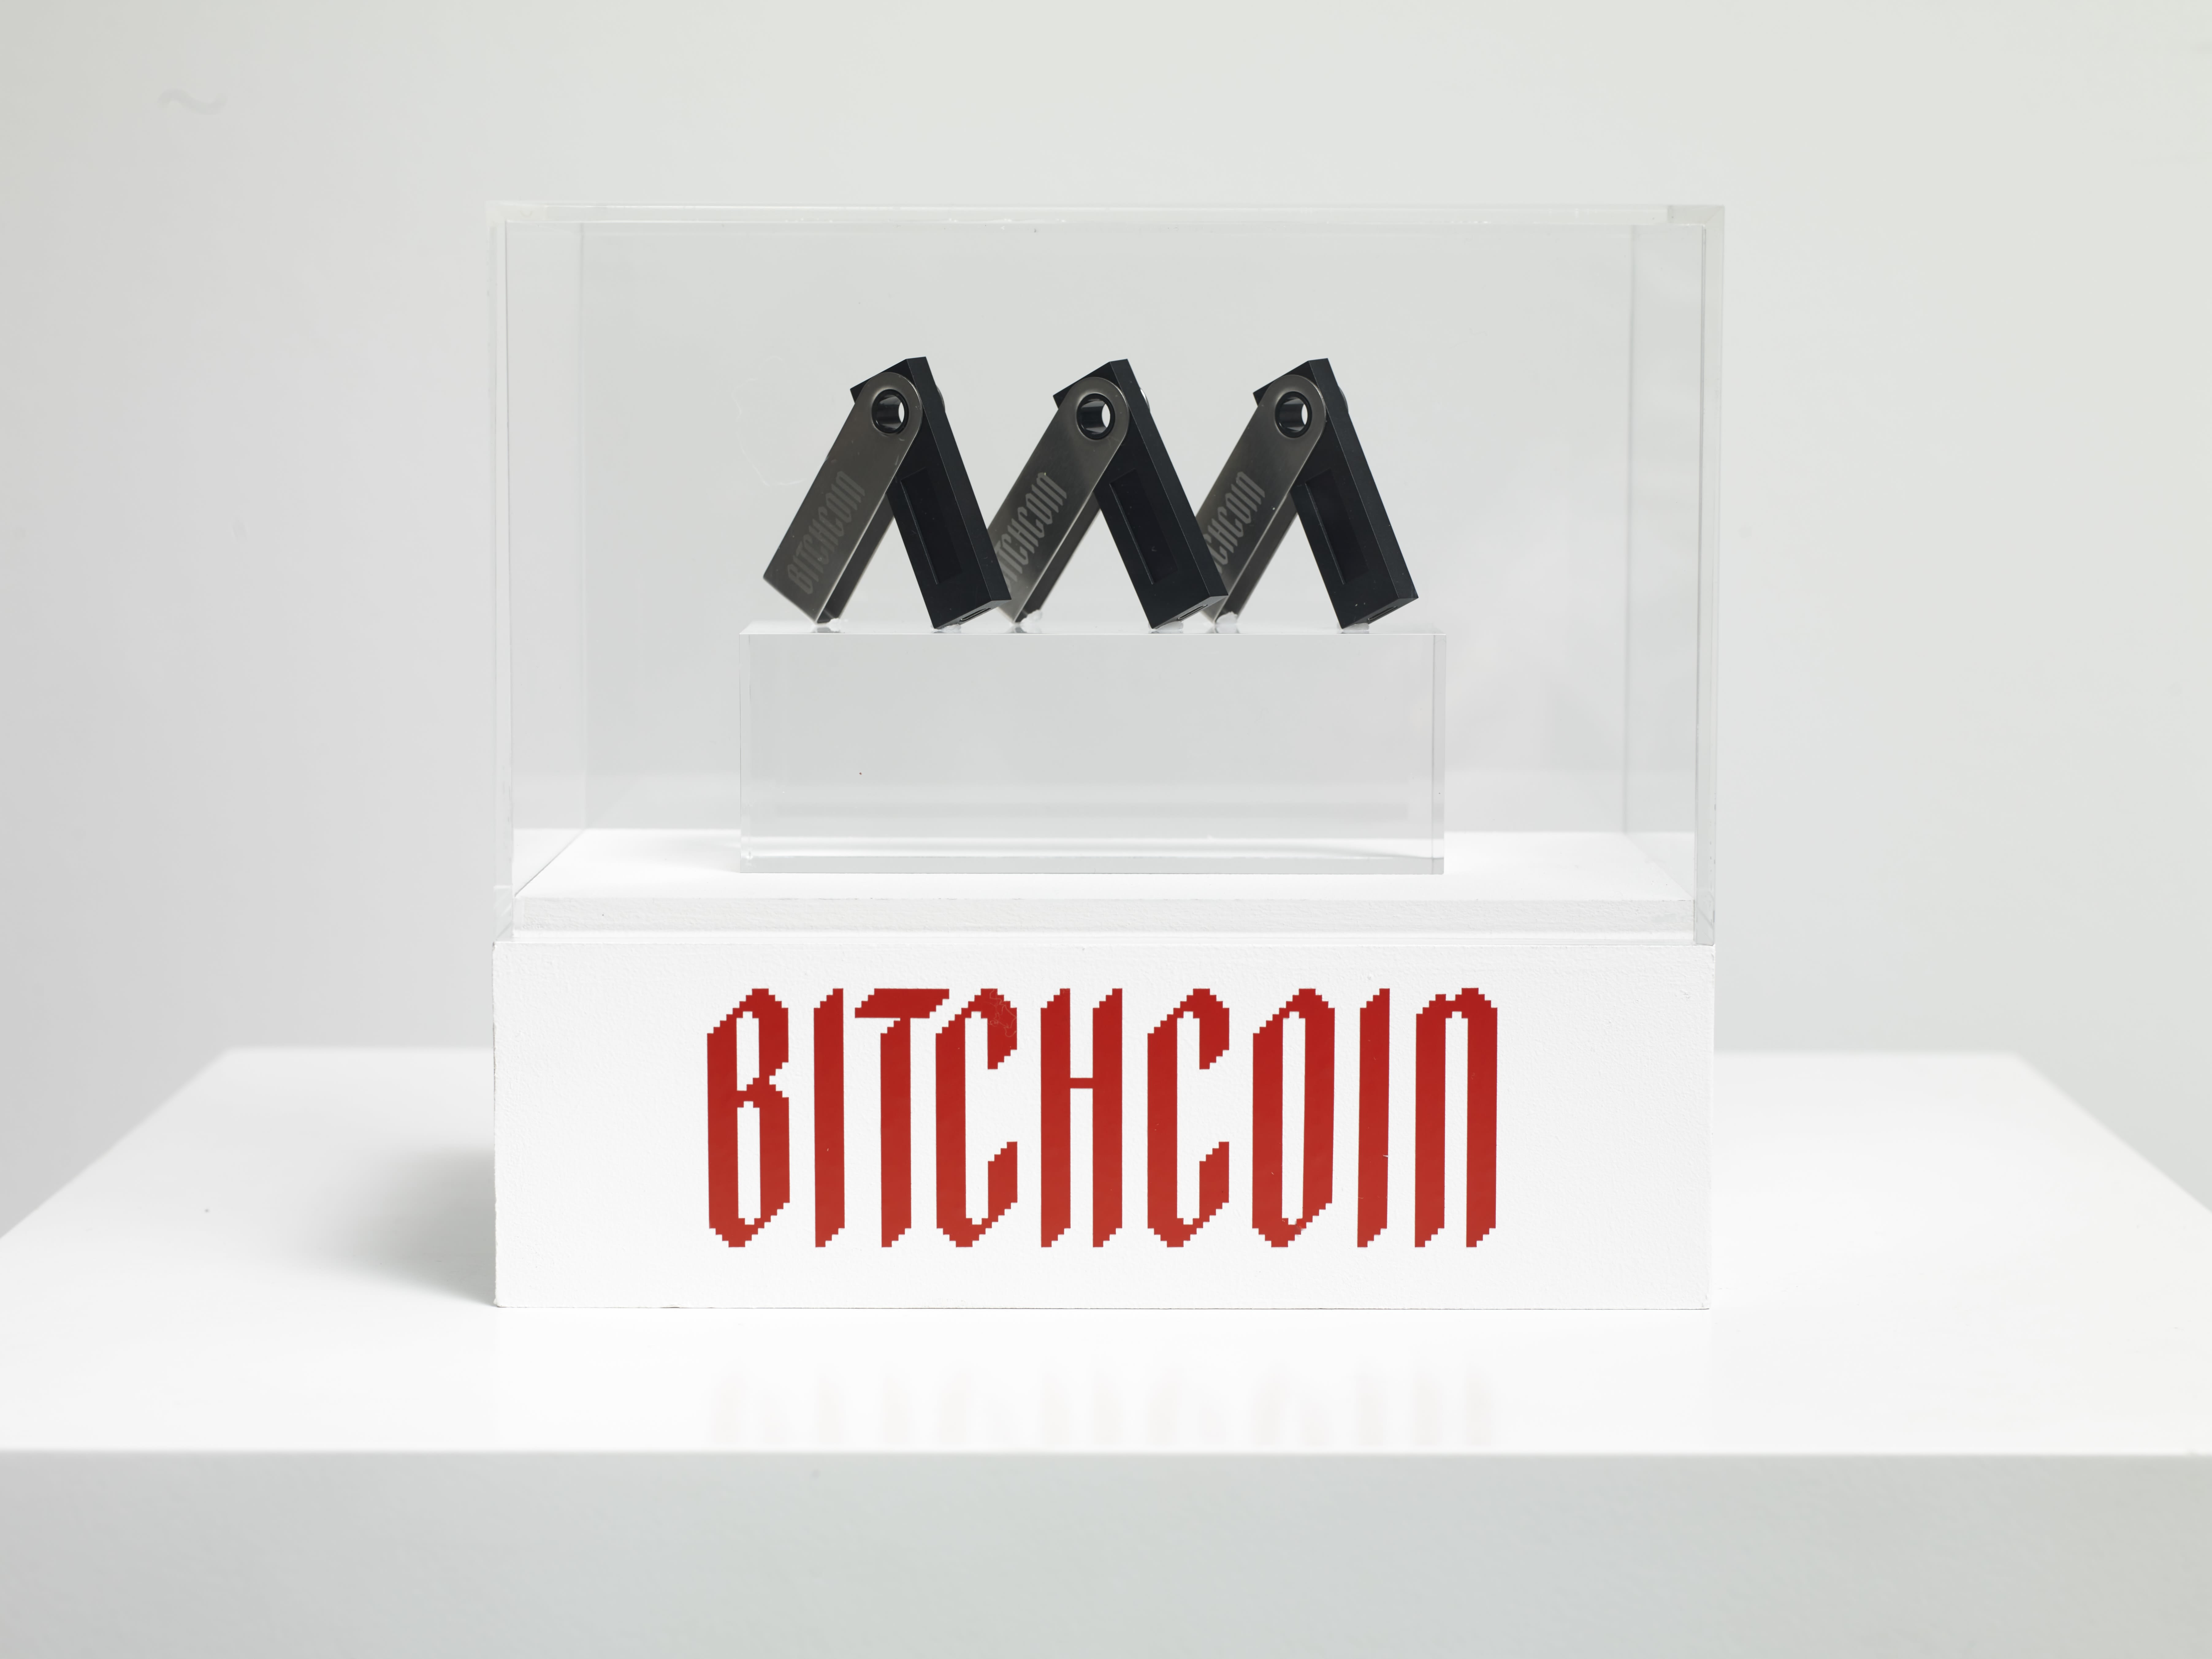 Bitchcoin-etched Ledger wallet